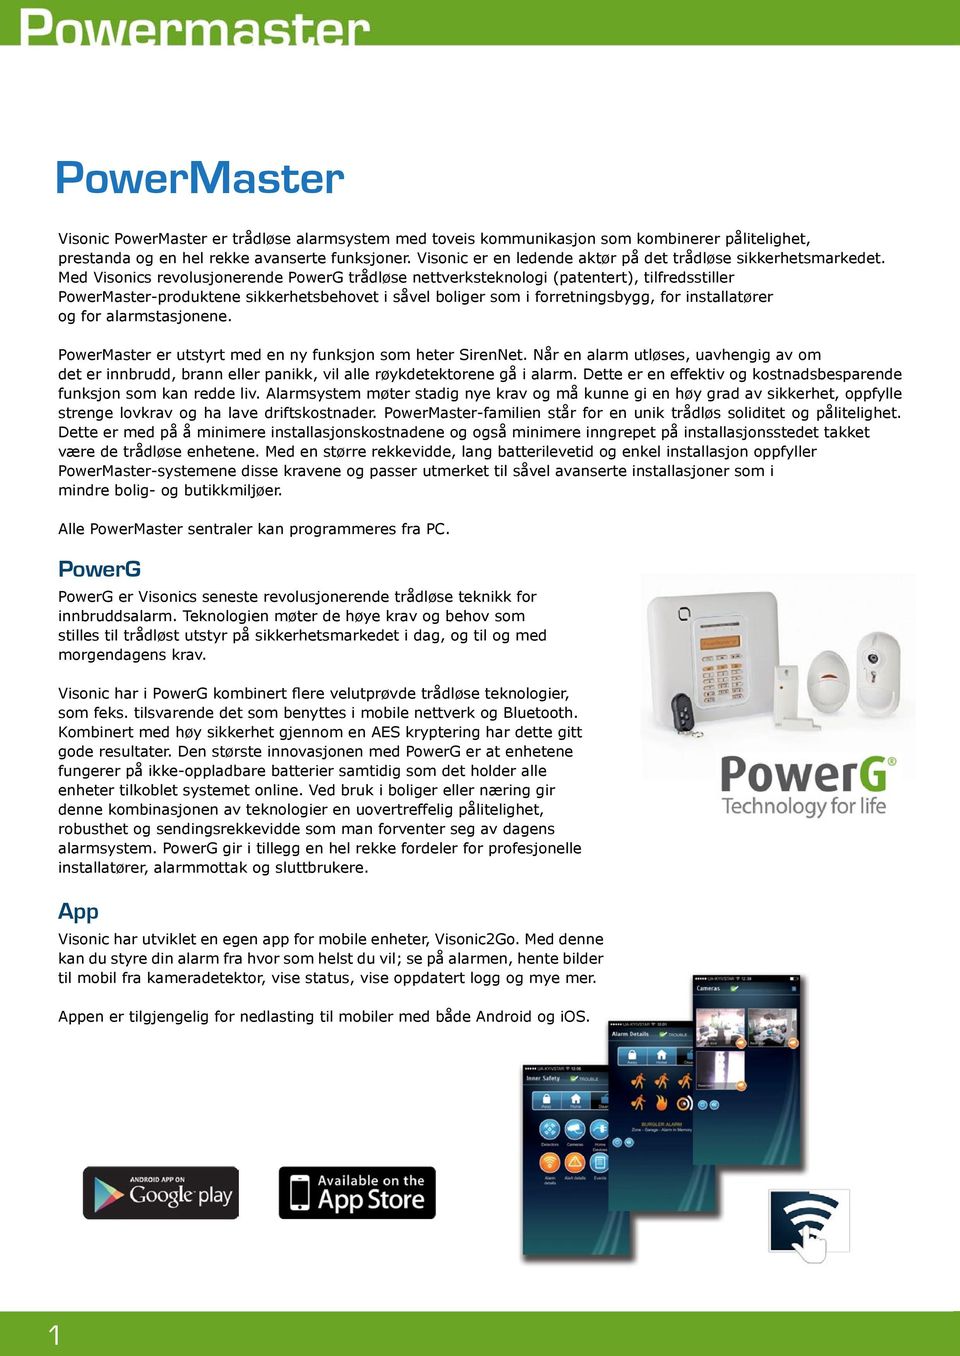 Med Visonics revolusjonerende PowerG trådløse nettverksteknologi (patentert), tilfredsstiller PowerMaster-produktene sikkerhetsbehovet i såvel boliger som i forretningsbygg, for installatører og for